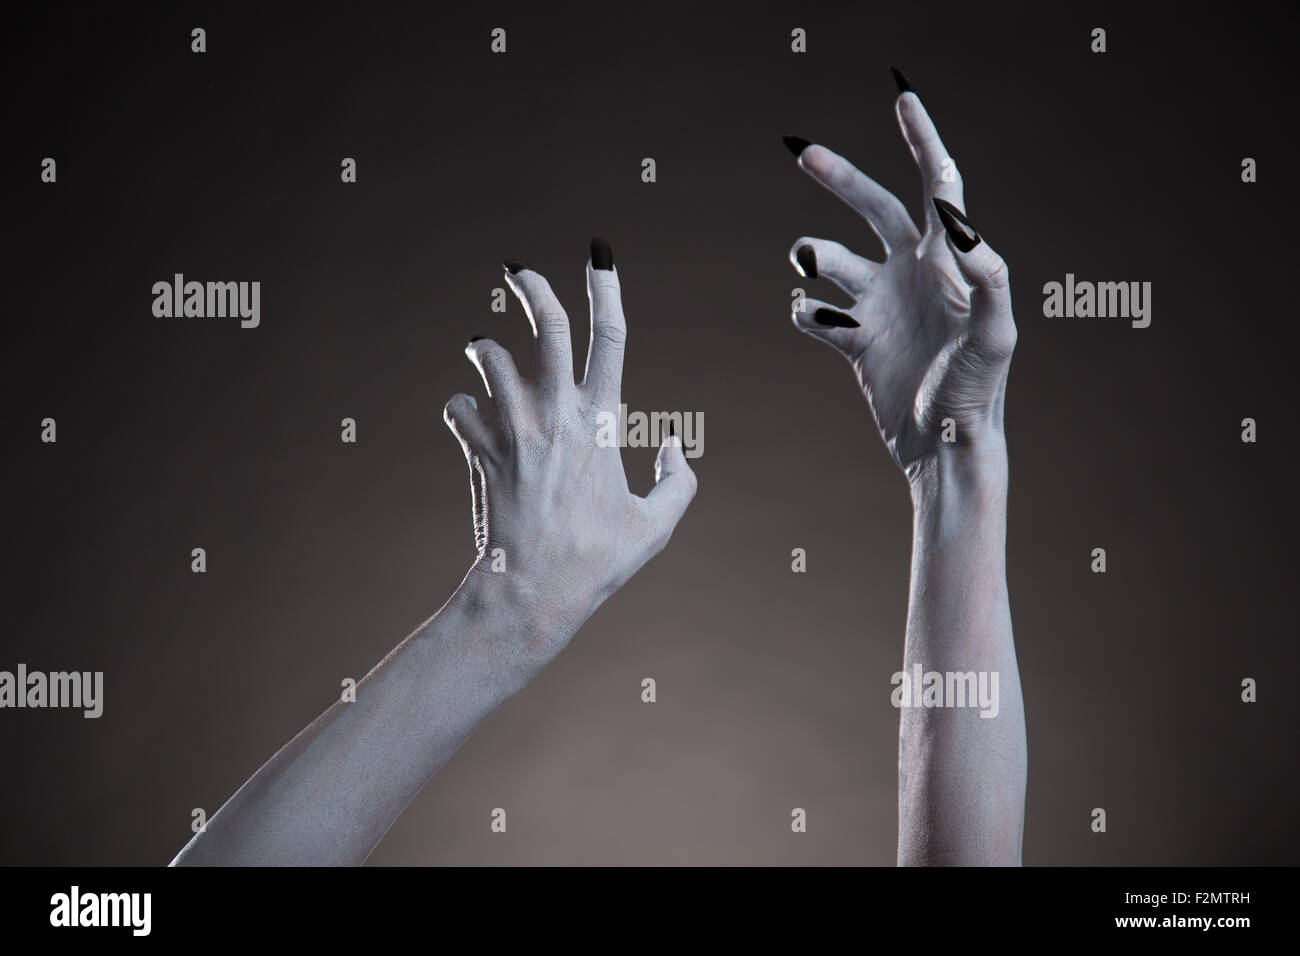 Spooky Halloween blanches mains avec des ongles noirs s'étendant jusqu', body art Banque D'Images